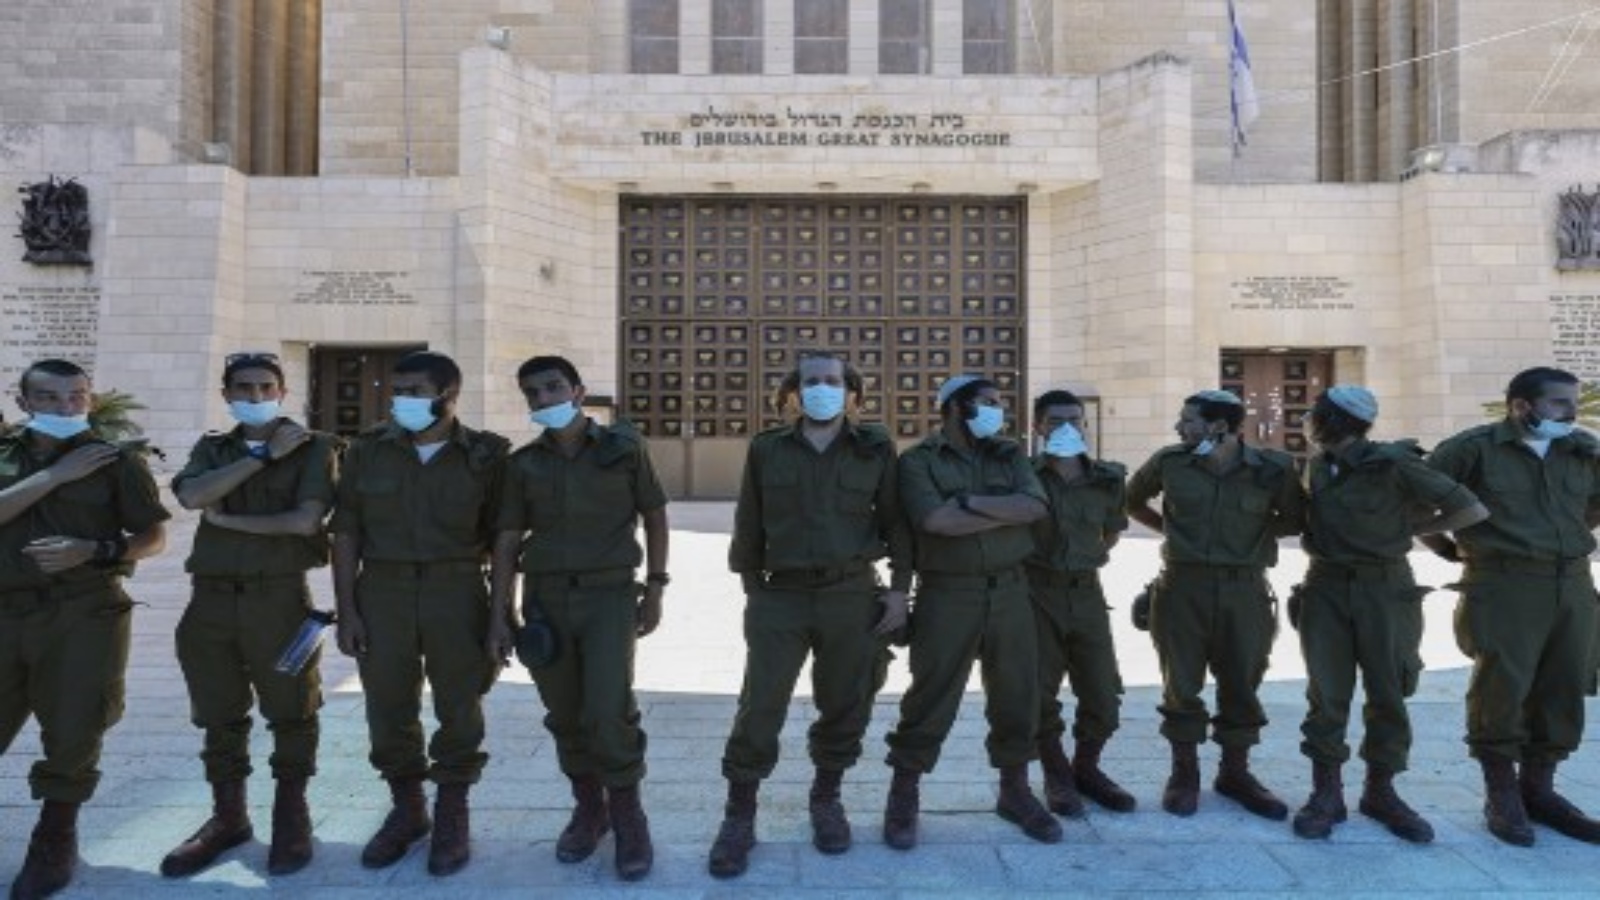 جنود إسرائيليين يرتدون أقنعة لتجنب انتشار فيروس كورونا Covid-19 خارج كنيس القدس الكبير المغلق. سيتم إغلاق المعبد اليهودي الكبير في القدس لأول مرة خلال السنة اليهودية الجديدة